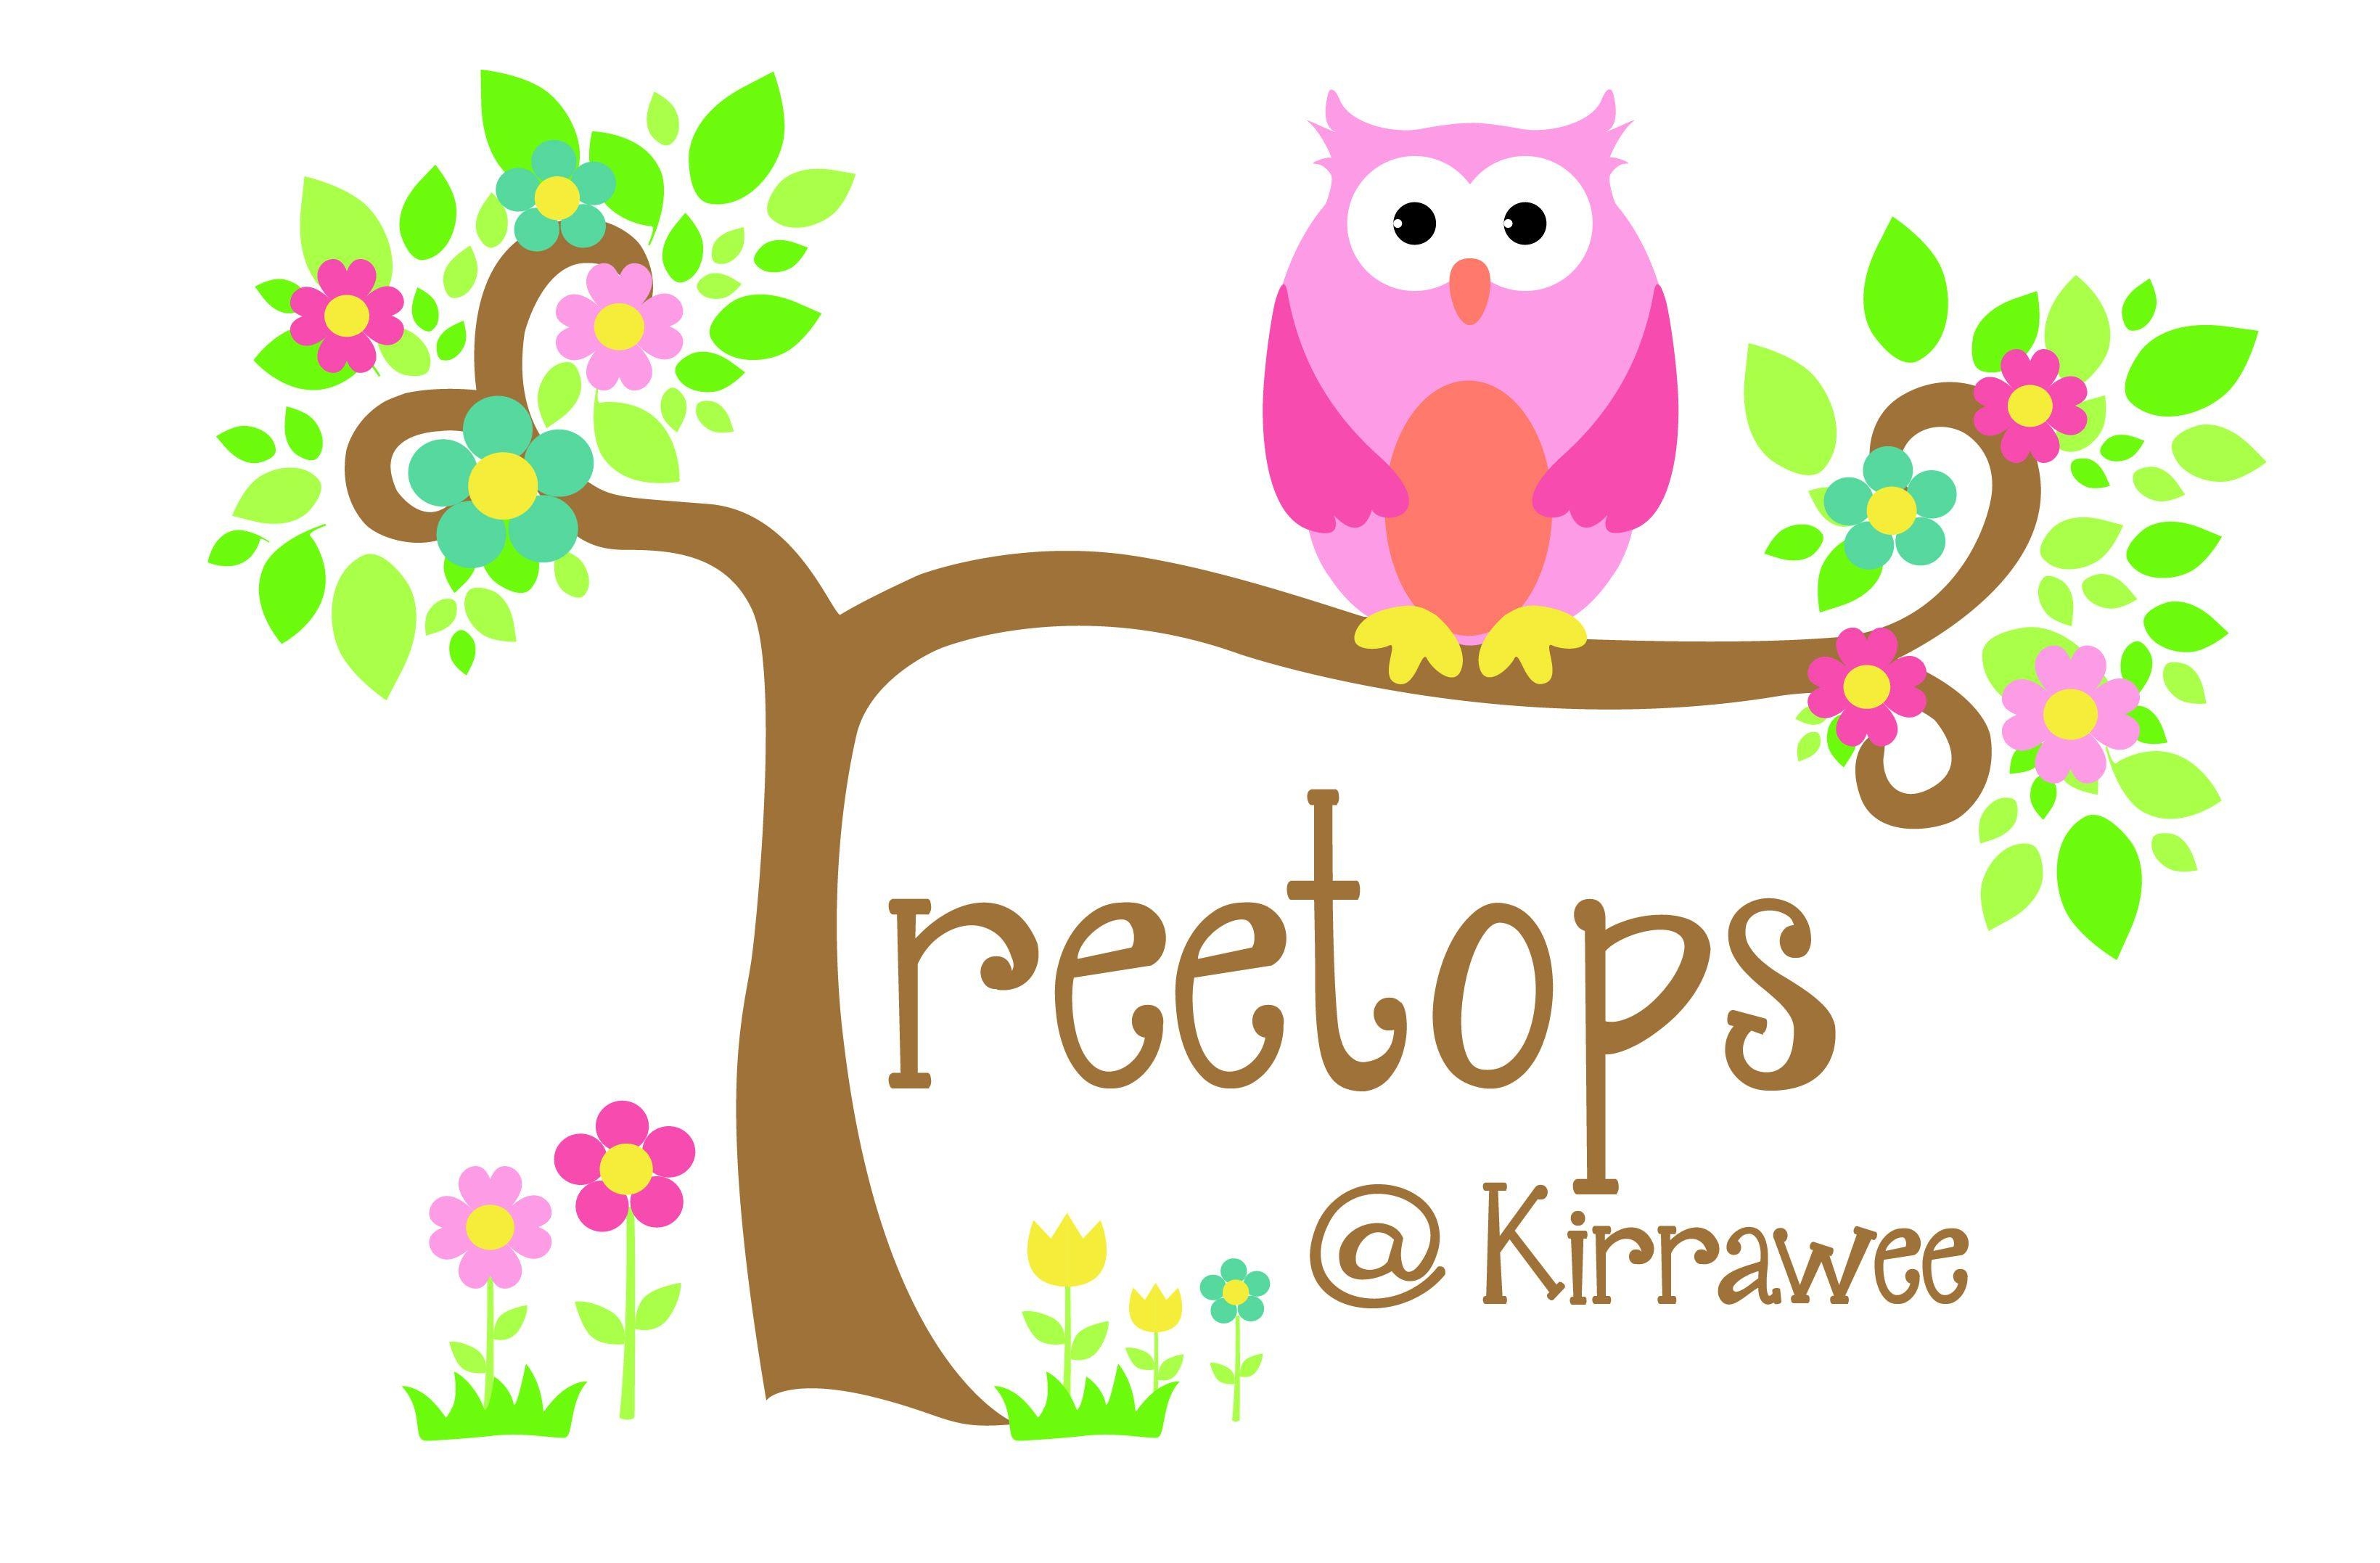 Treetops @ Kirrawee